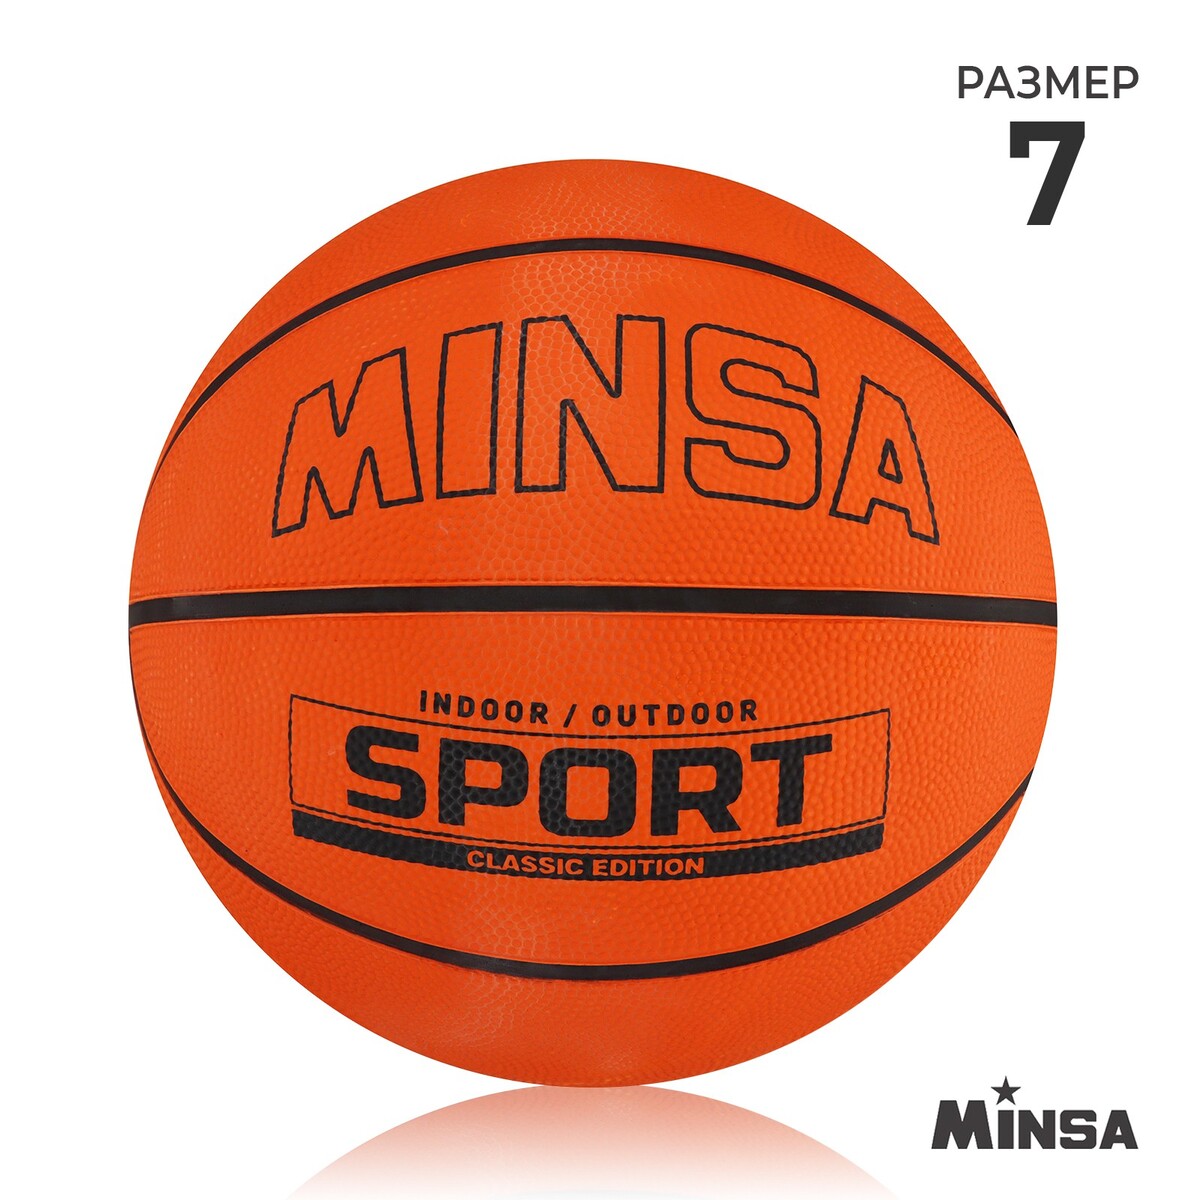 Мяч баскетбольный minsa sport, пвх, клееный, 8 панелей, р. 7 баскетбольный мяч minsa матчевый microfiber pu клееный 8 панелей р 6